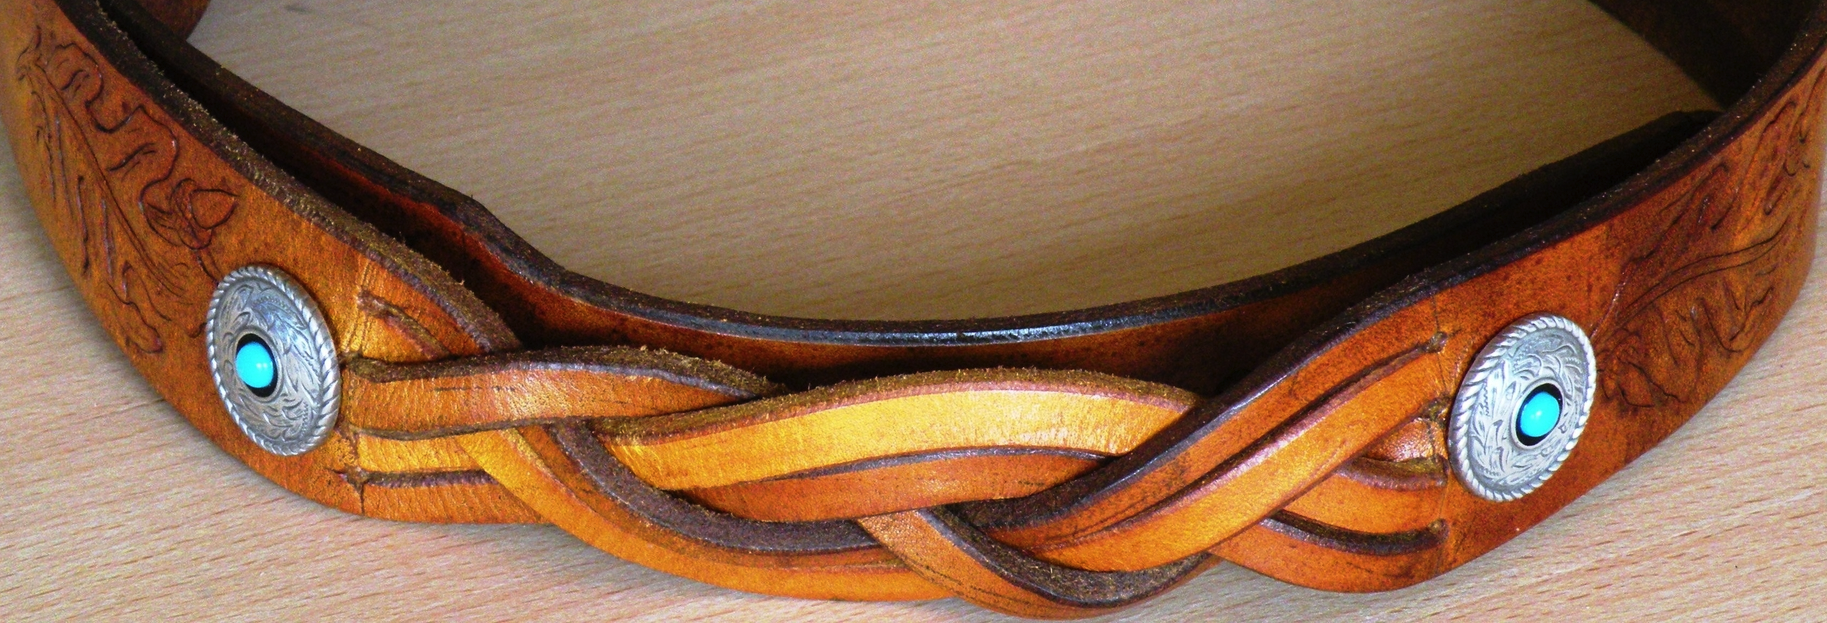 bSrtJfEdSSN7k064IUWL_Leather-belt . png